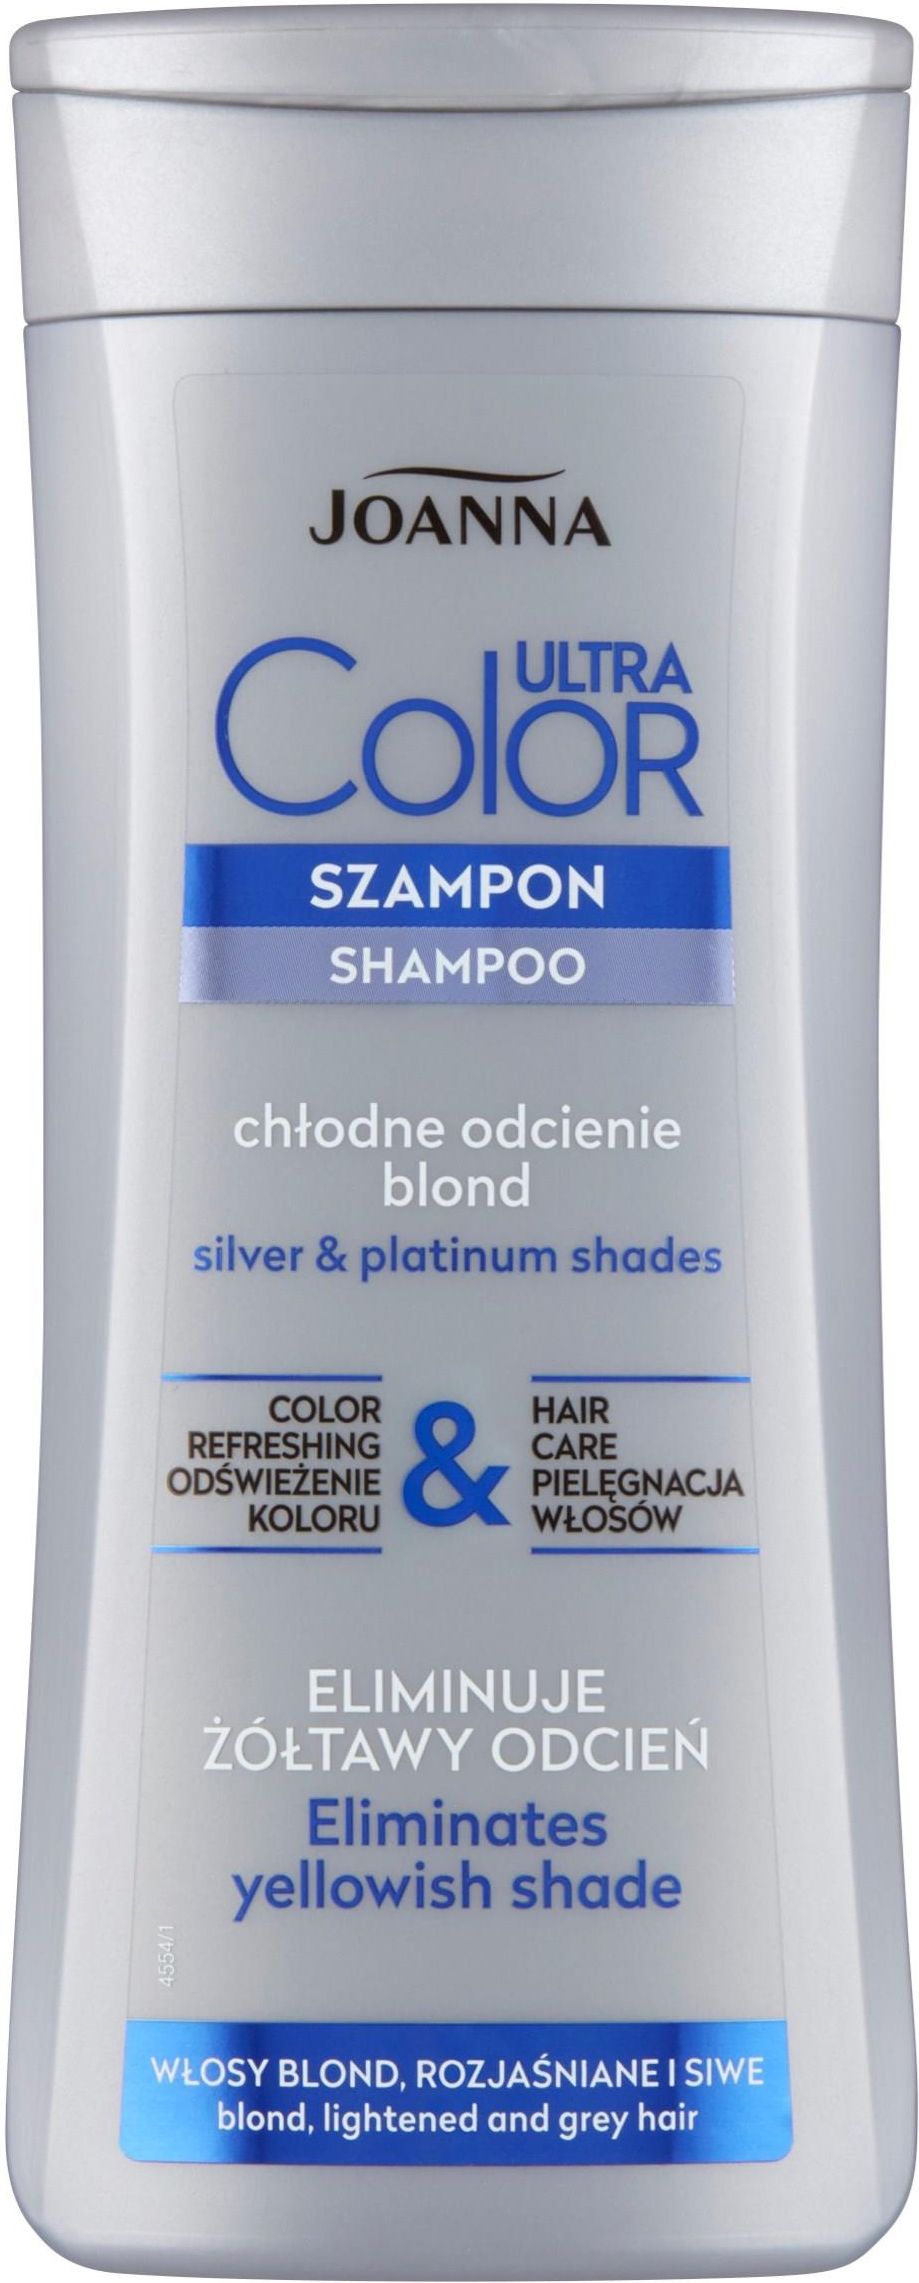 szampon na zolkniecie koloru